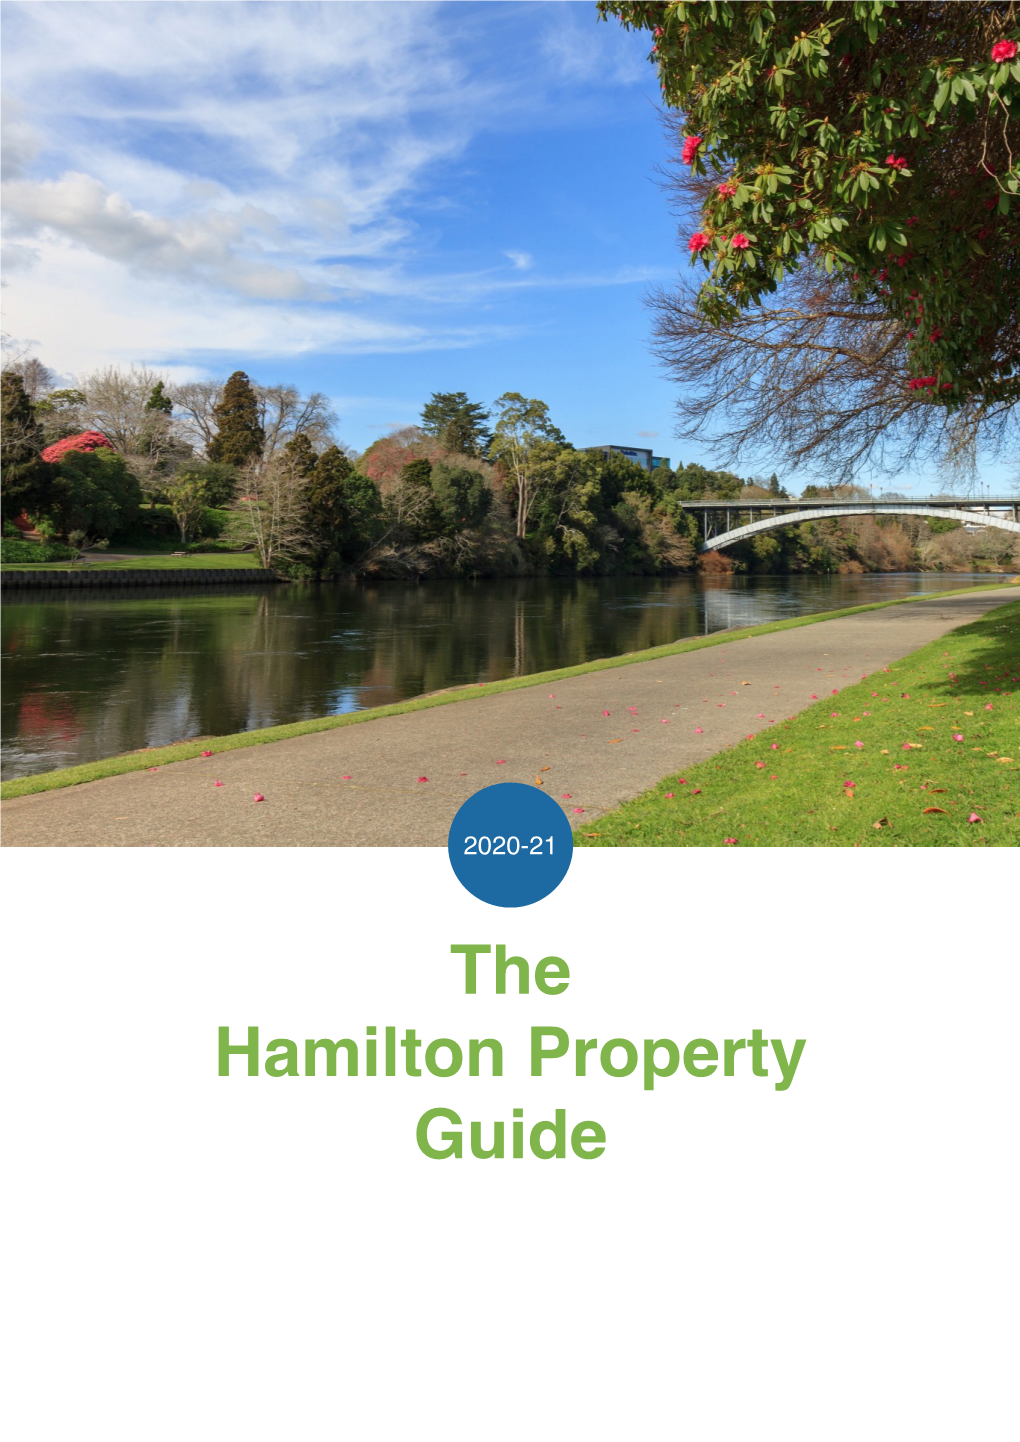 Hamilton Property Guide 2020-2021